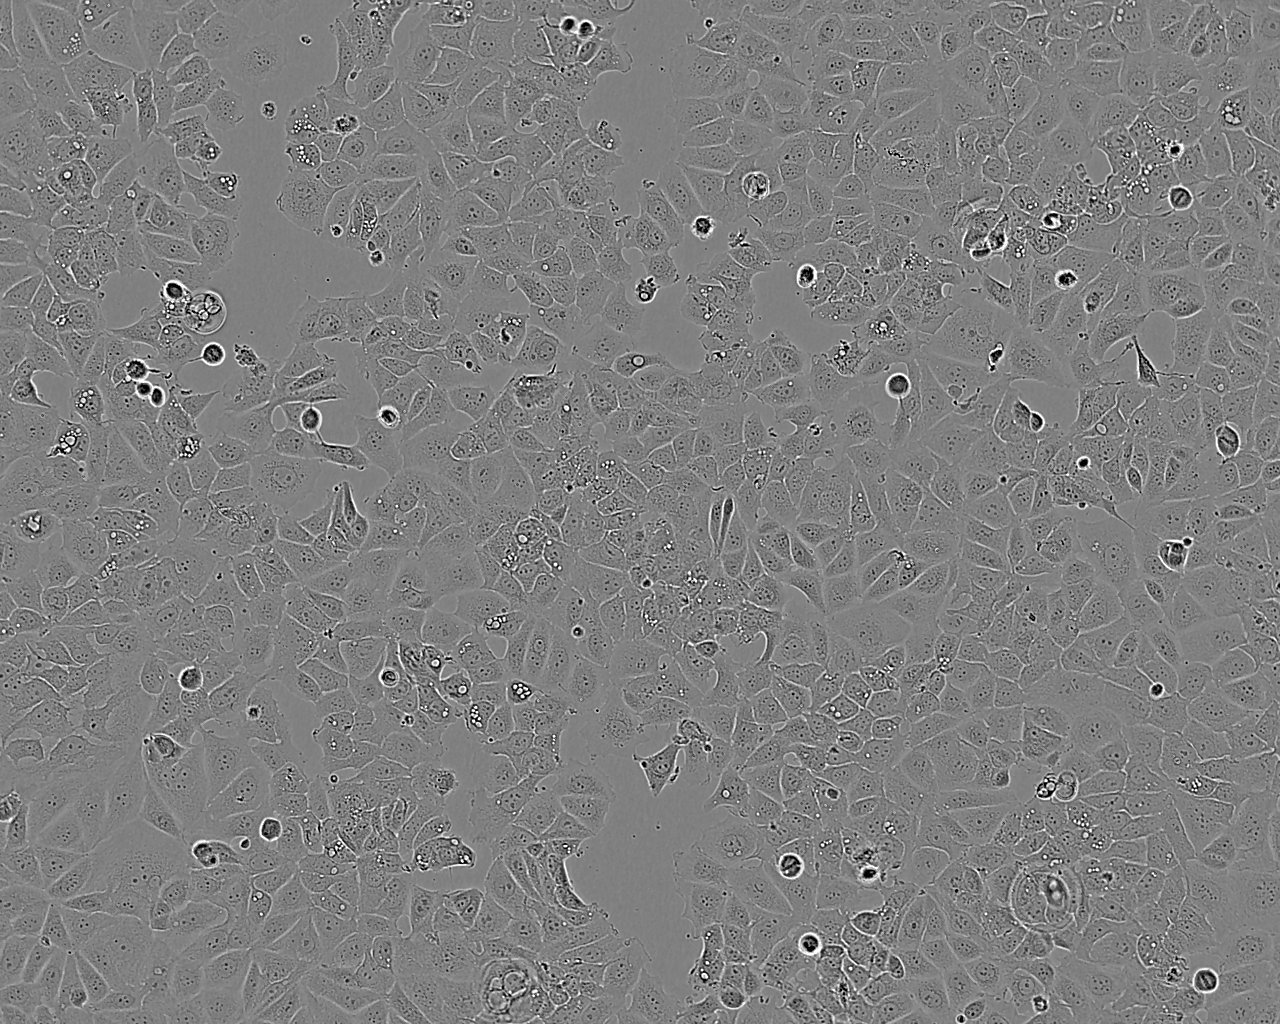 EJ-1 cell line人膀胱癌细胞系